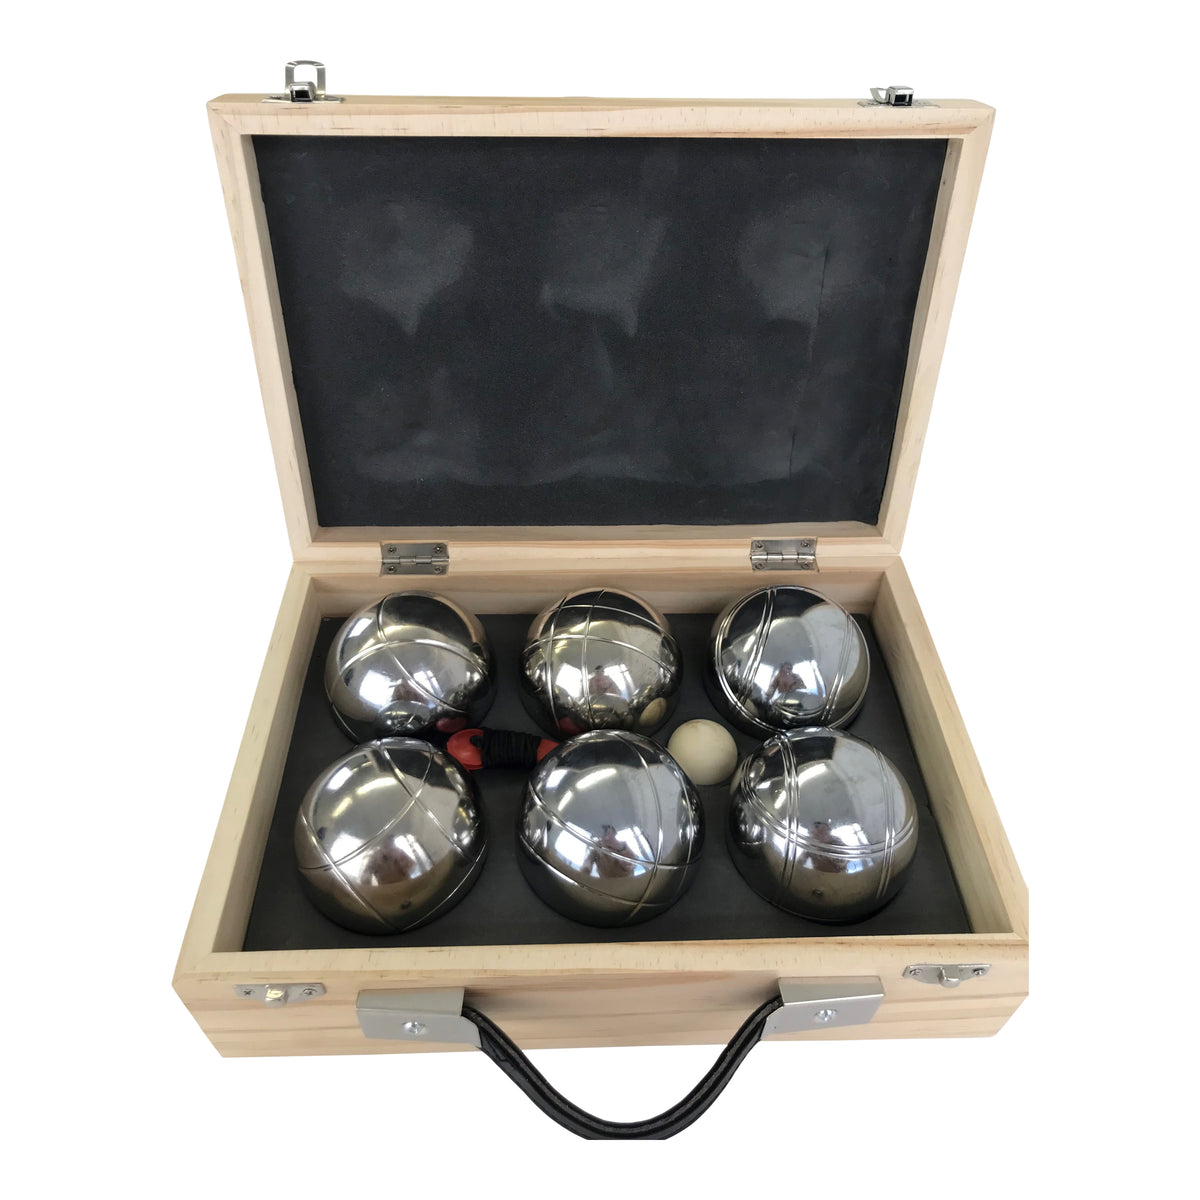 6 Ball Boule Boxed Set